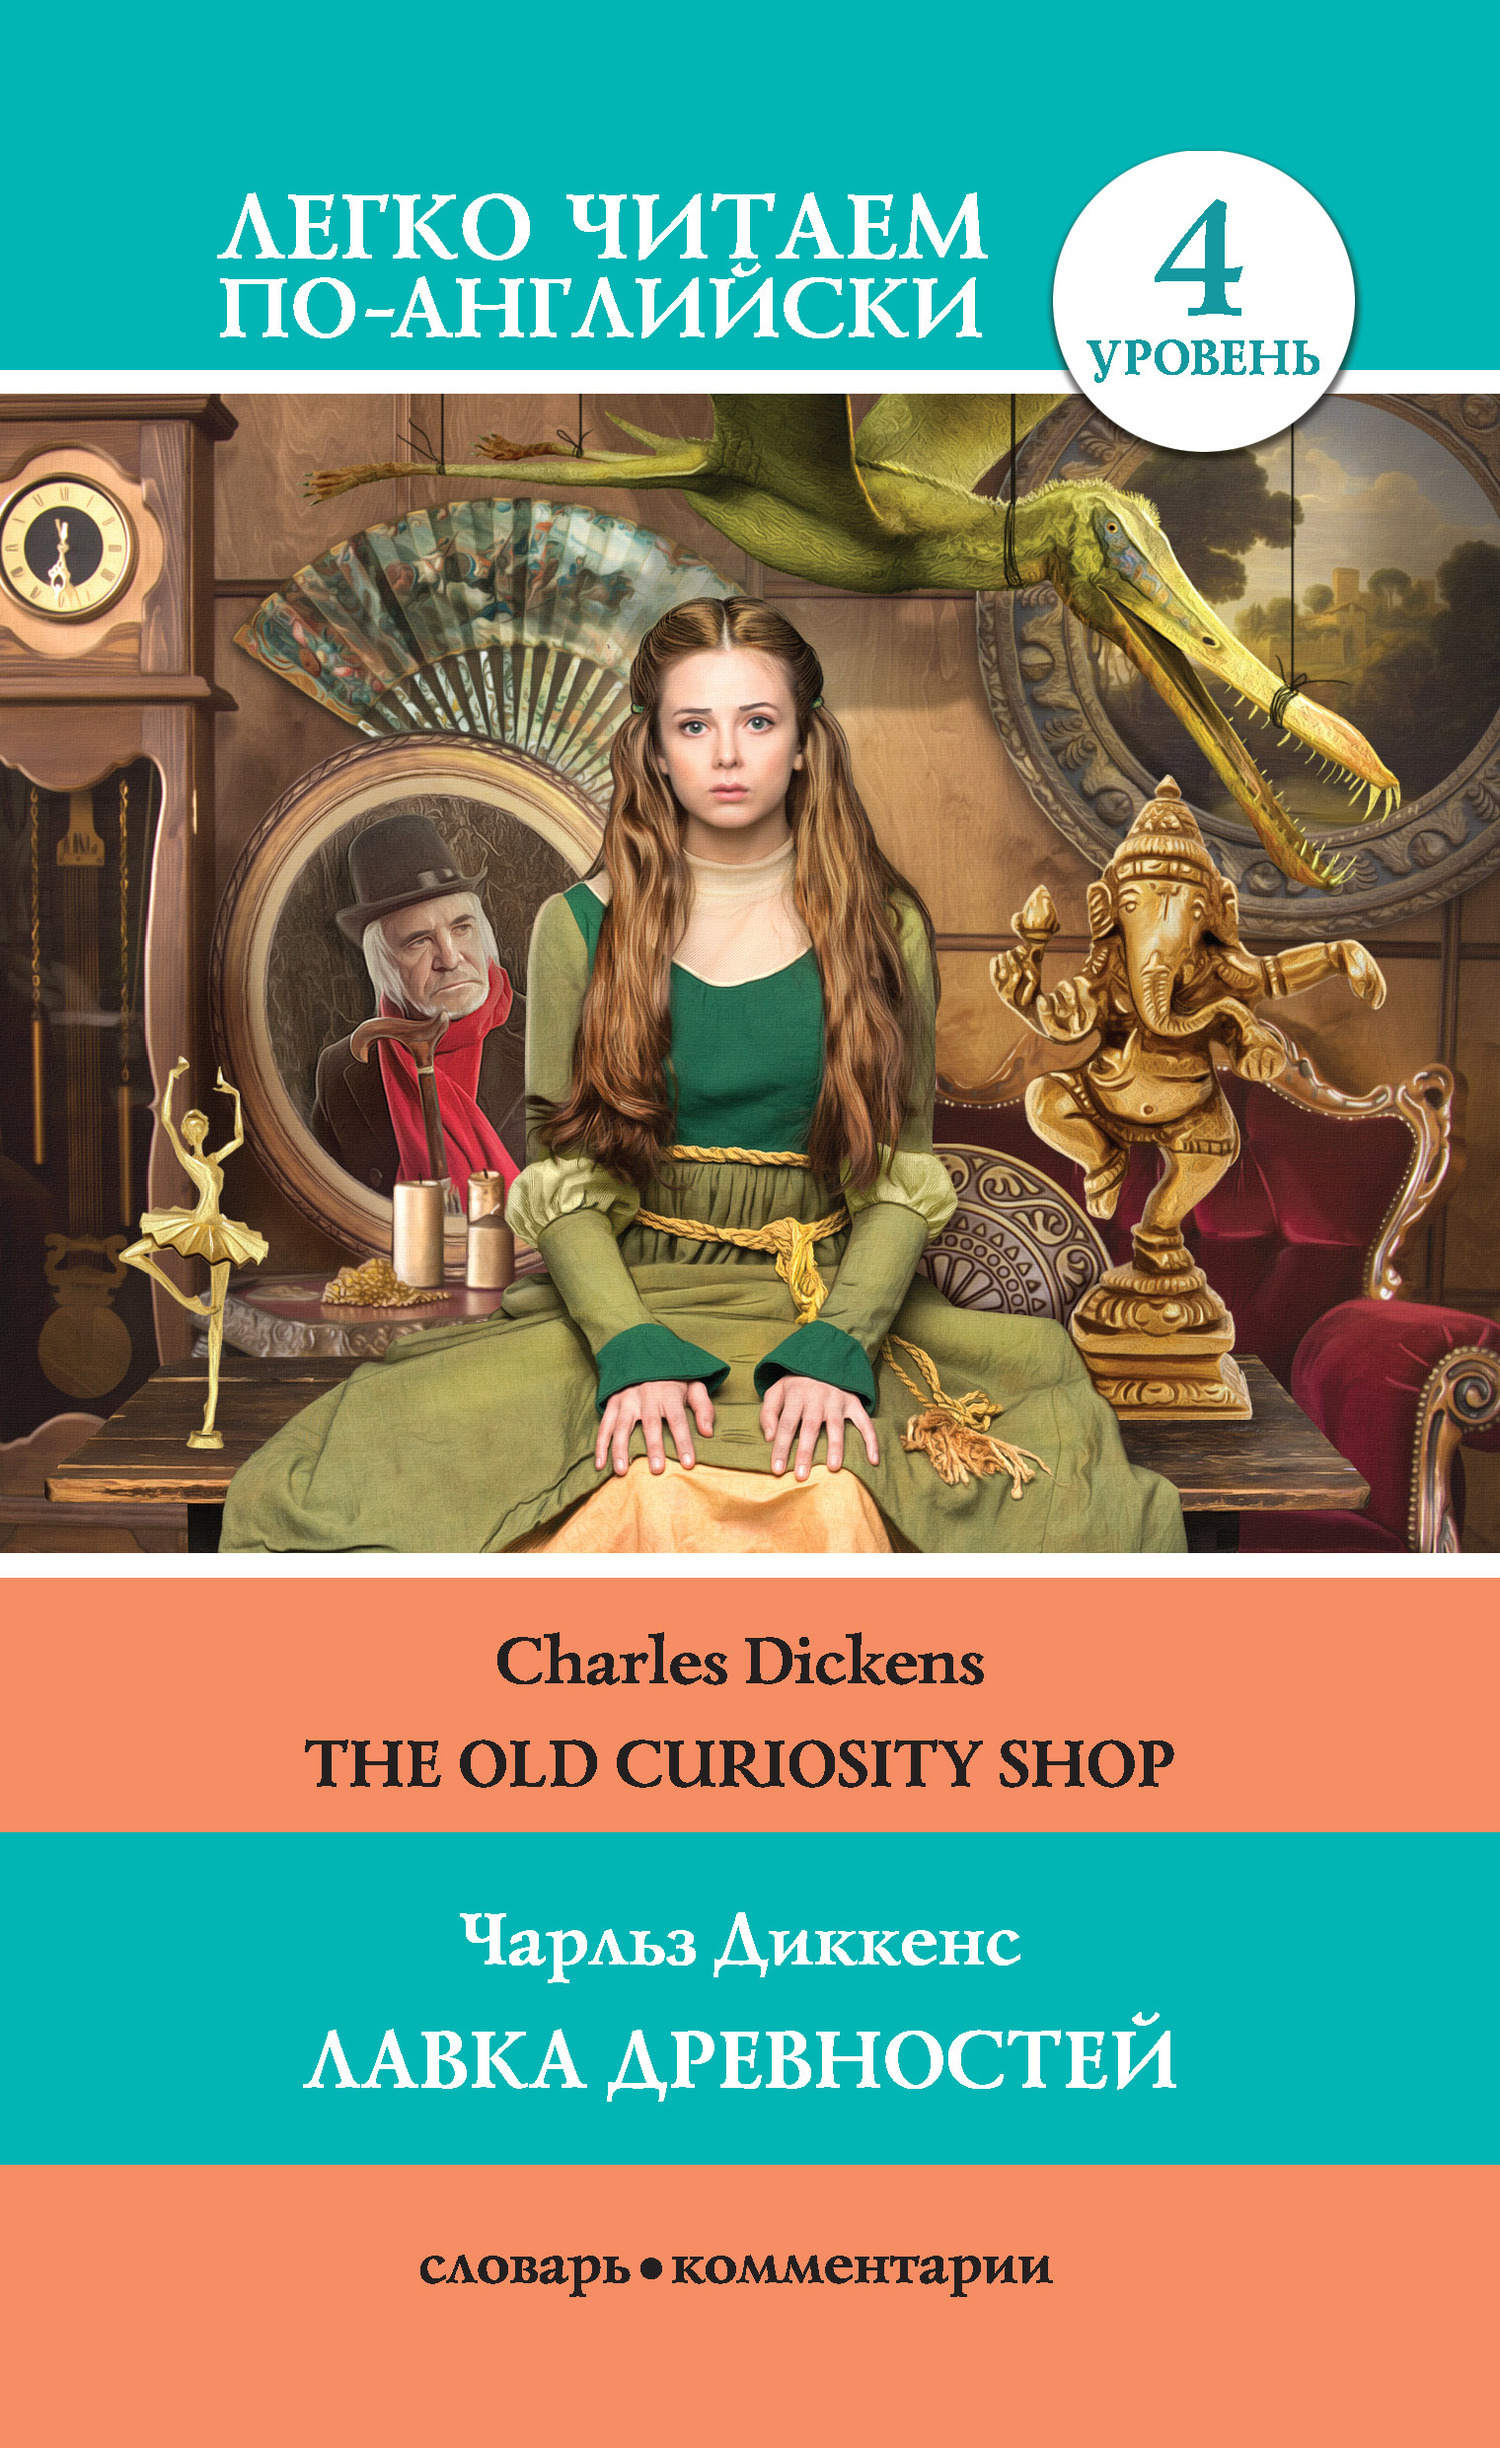 Скачать The Old Curiosity Shop / Лавка древностей быстро